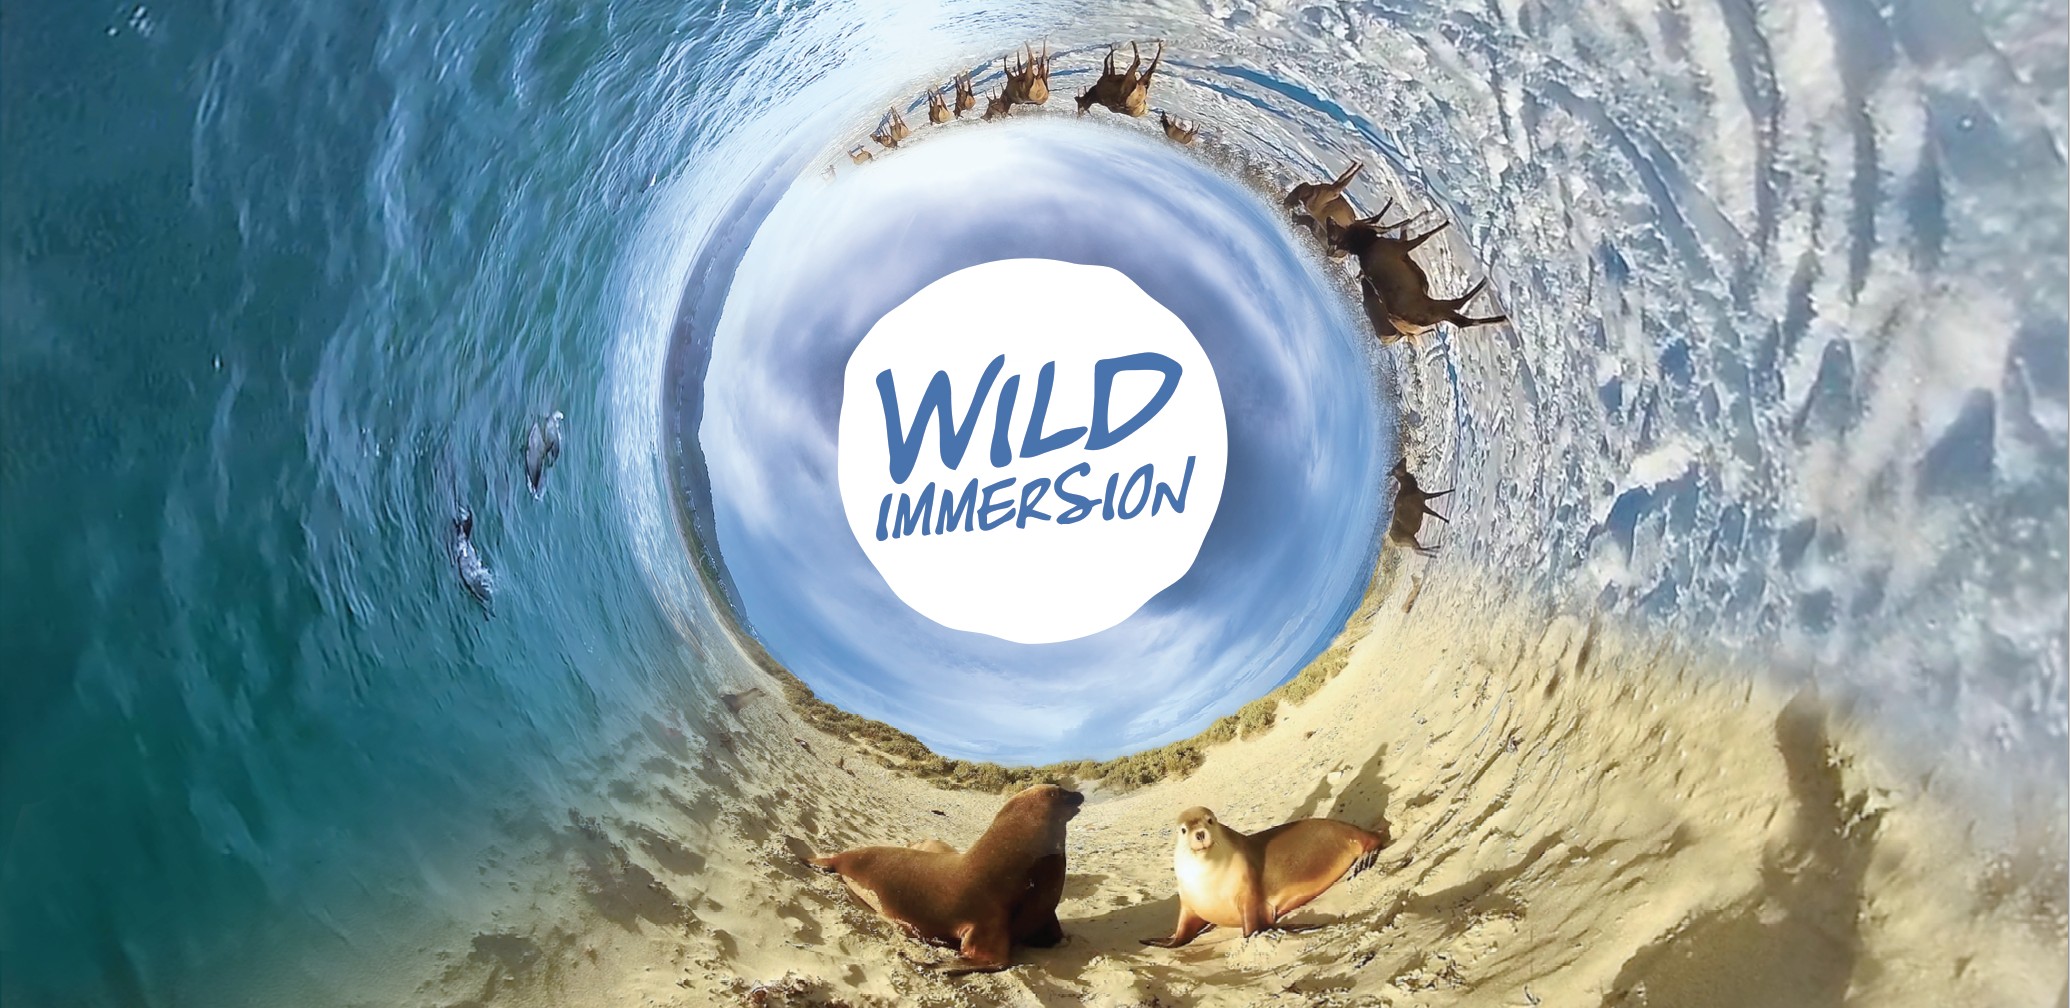 升旗山 Wild Immersion VR虛擬實境體驗